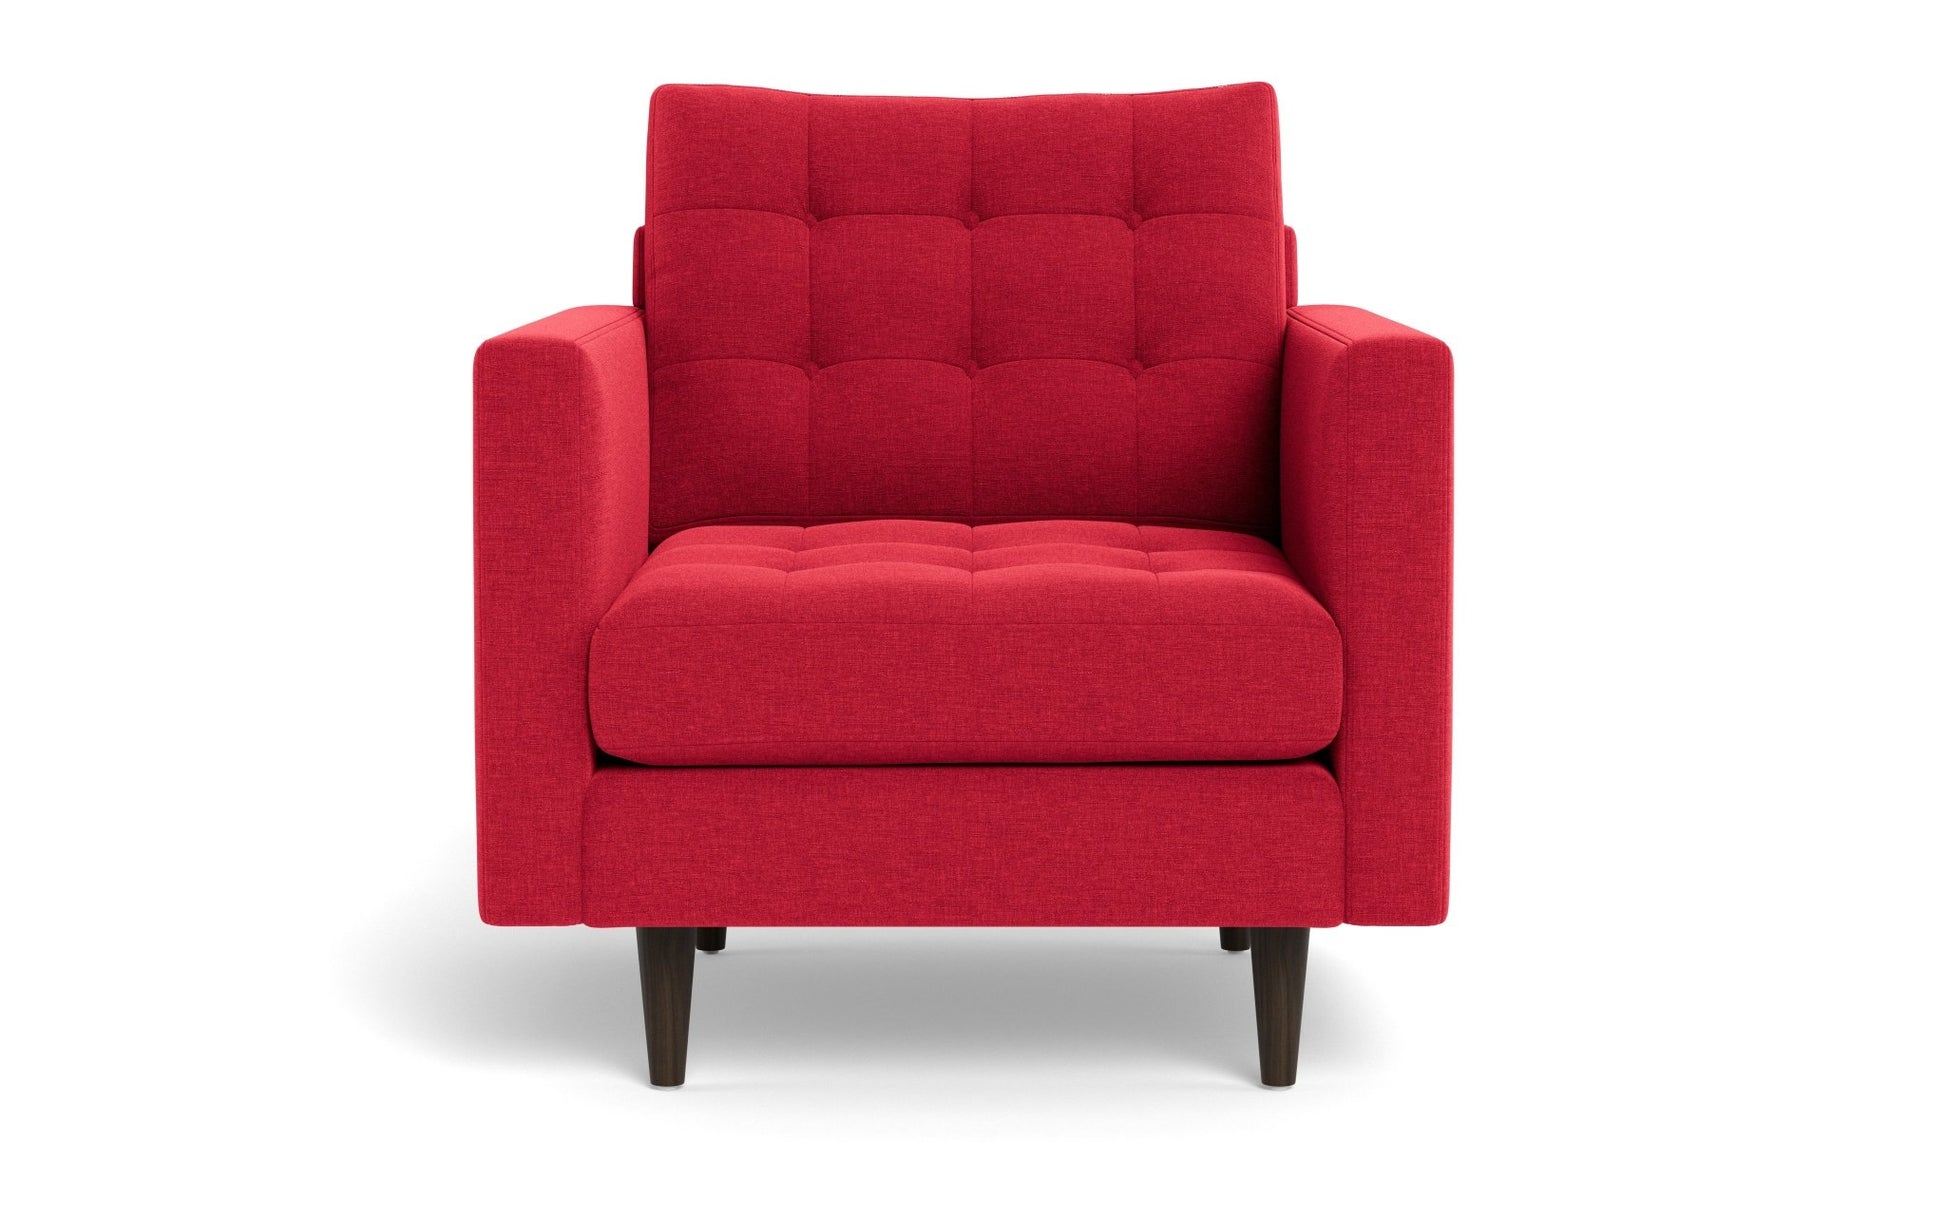 Wallace Chair - Bennett Red